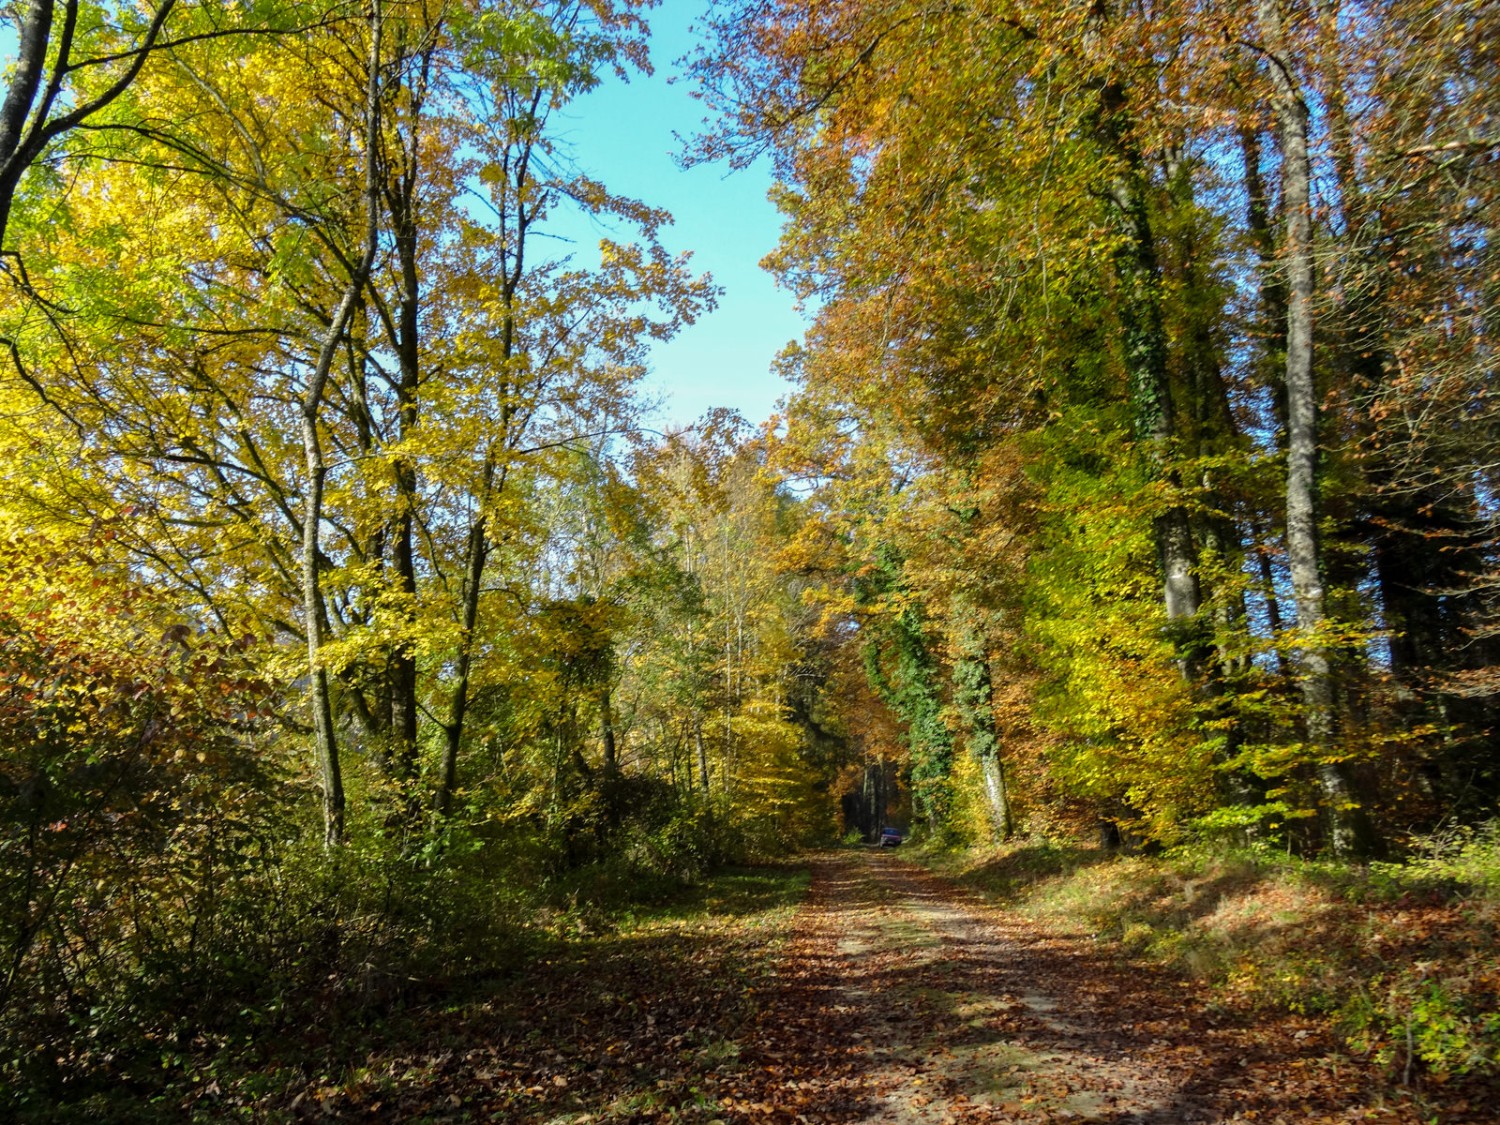 Freundliche Stimmung im Herbstwald.